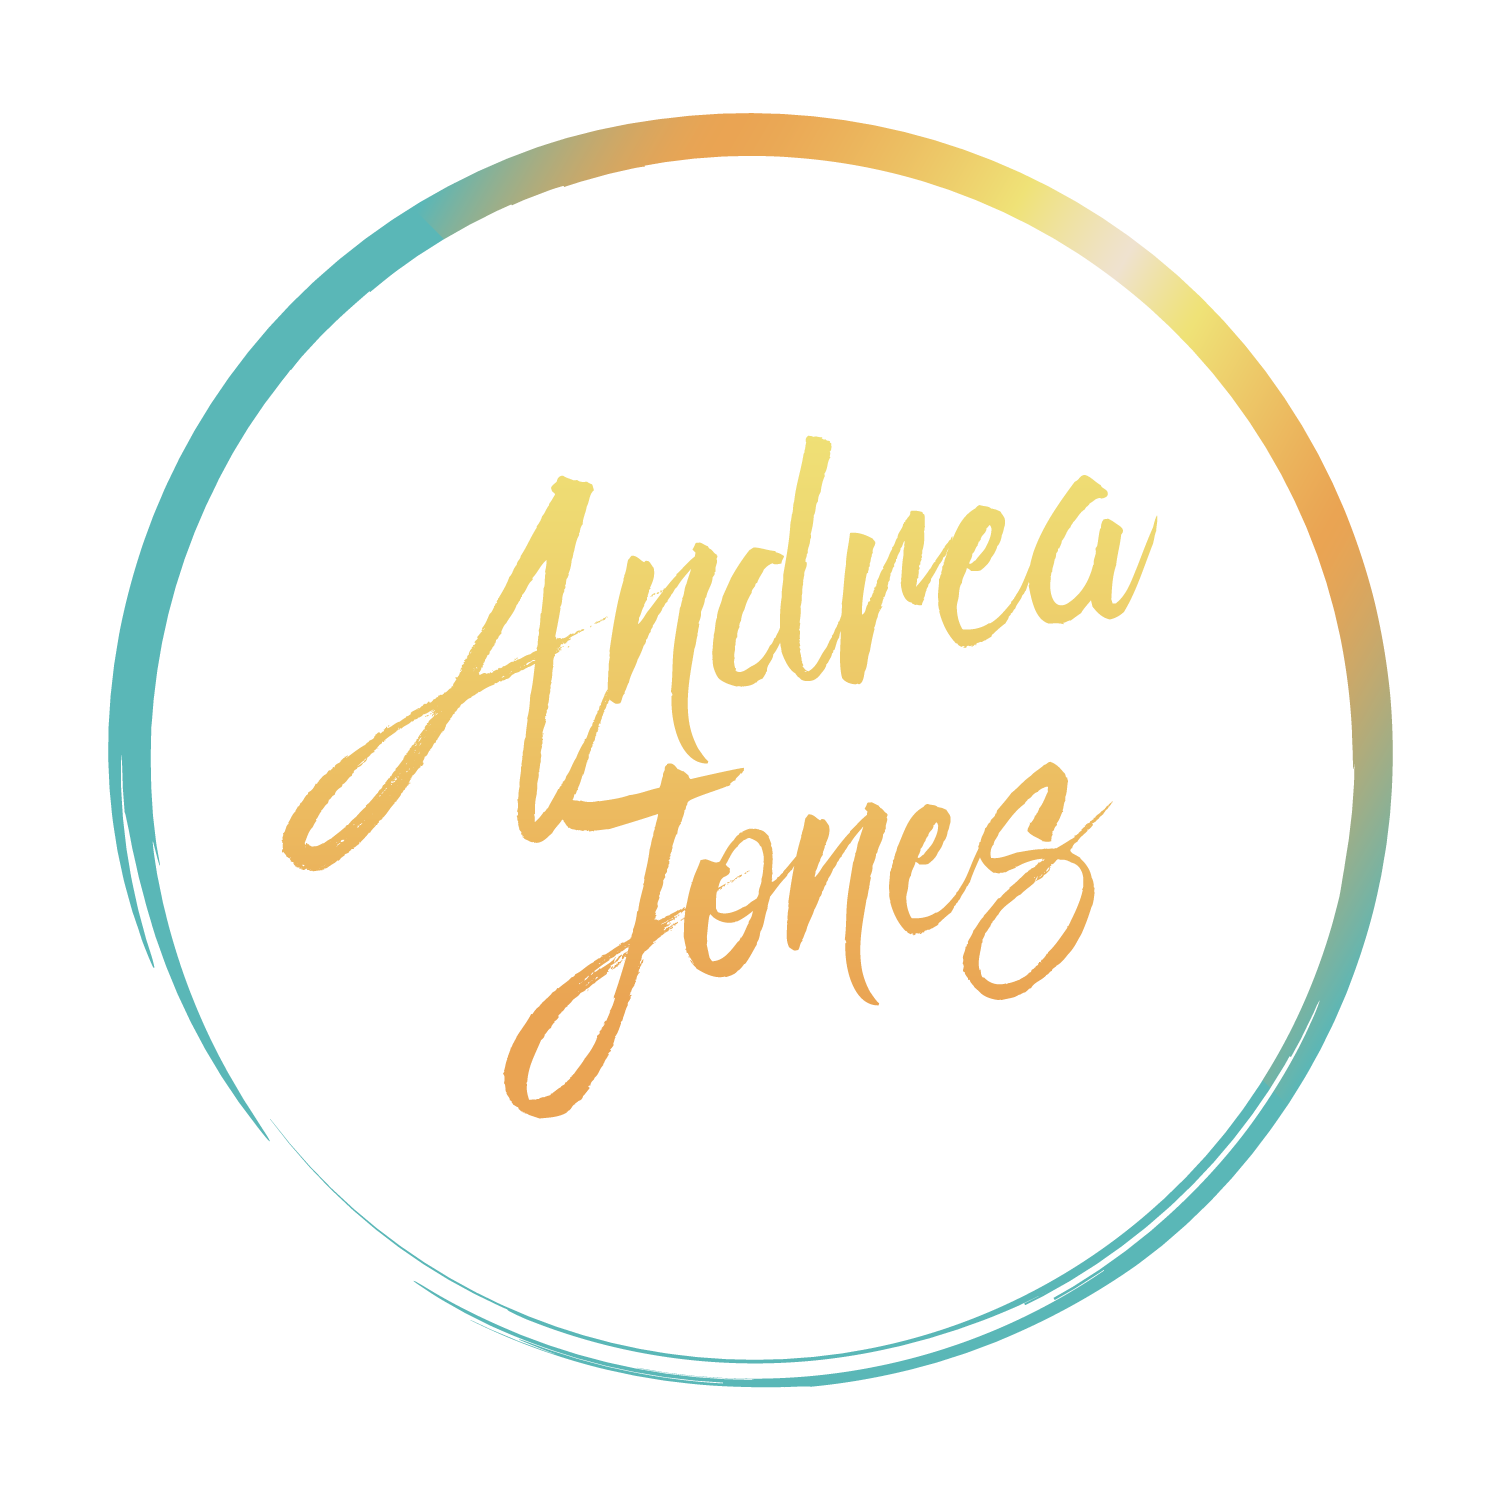 I AM ANDREA JONES